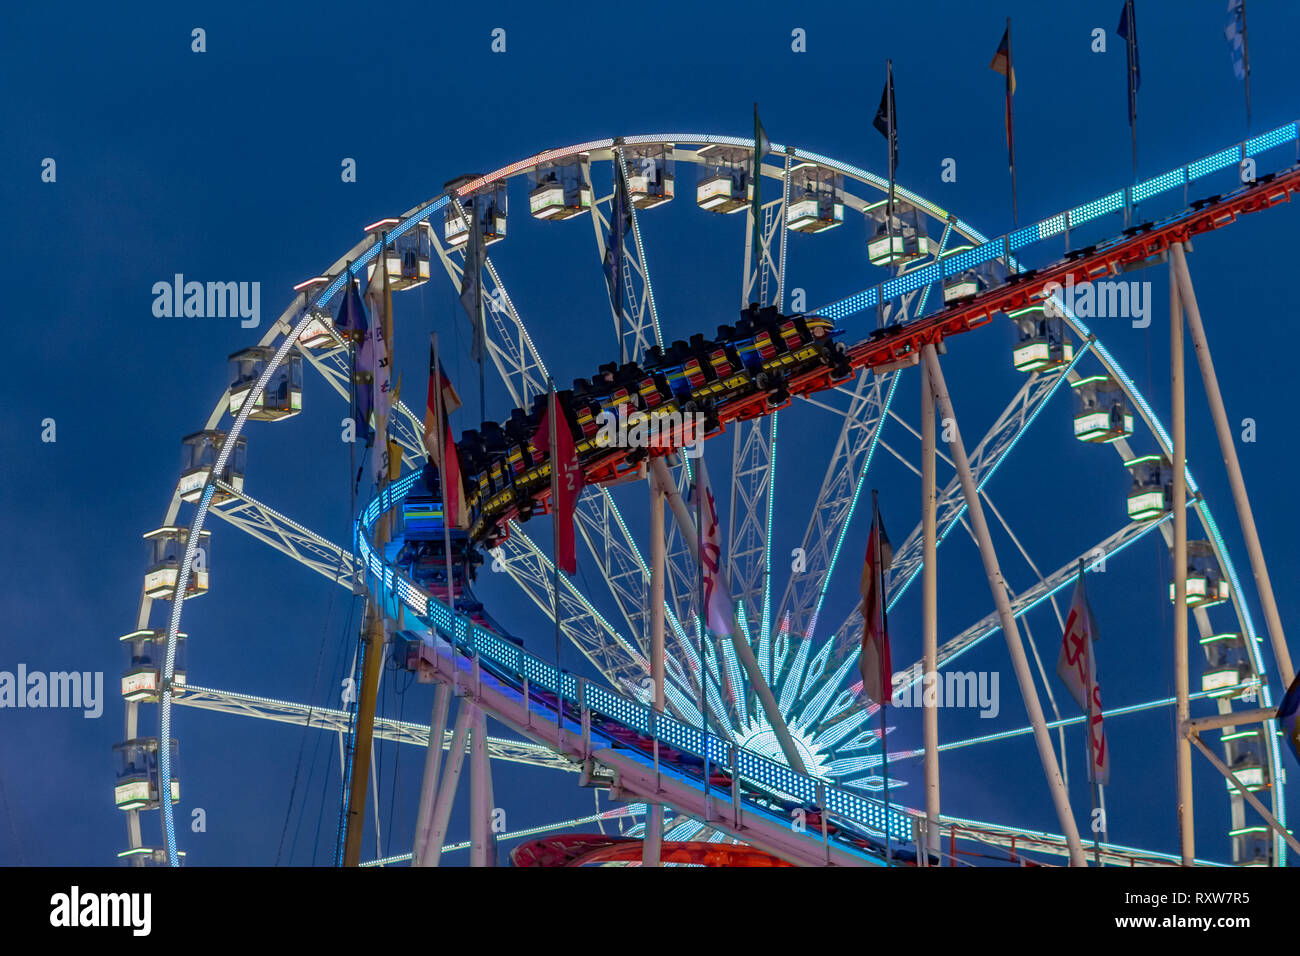 Amusement Park bei Nacht - Riesenrad und Achterbahn in Bewegung Stockfoto